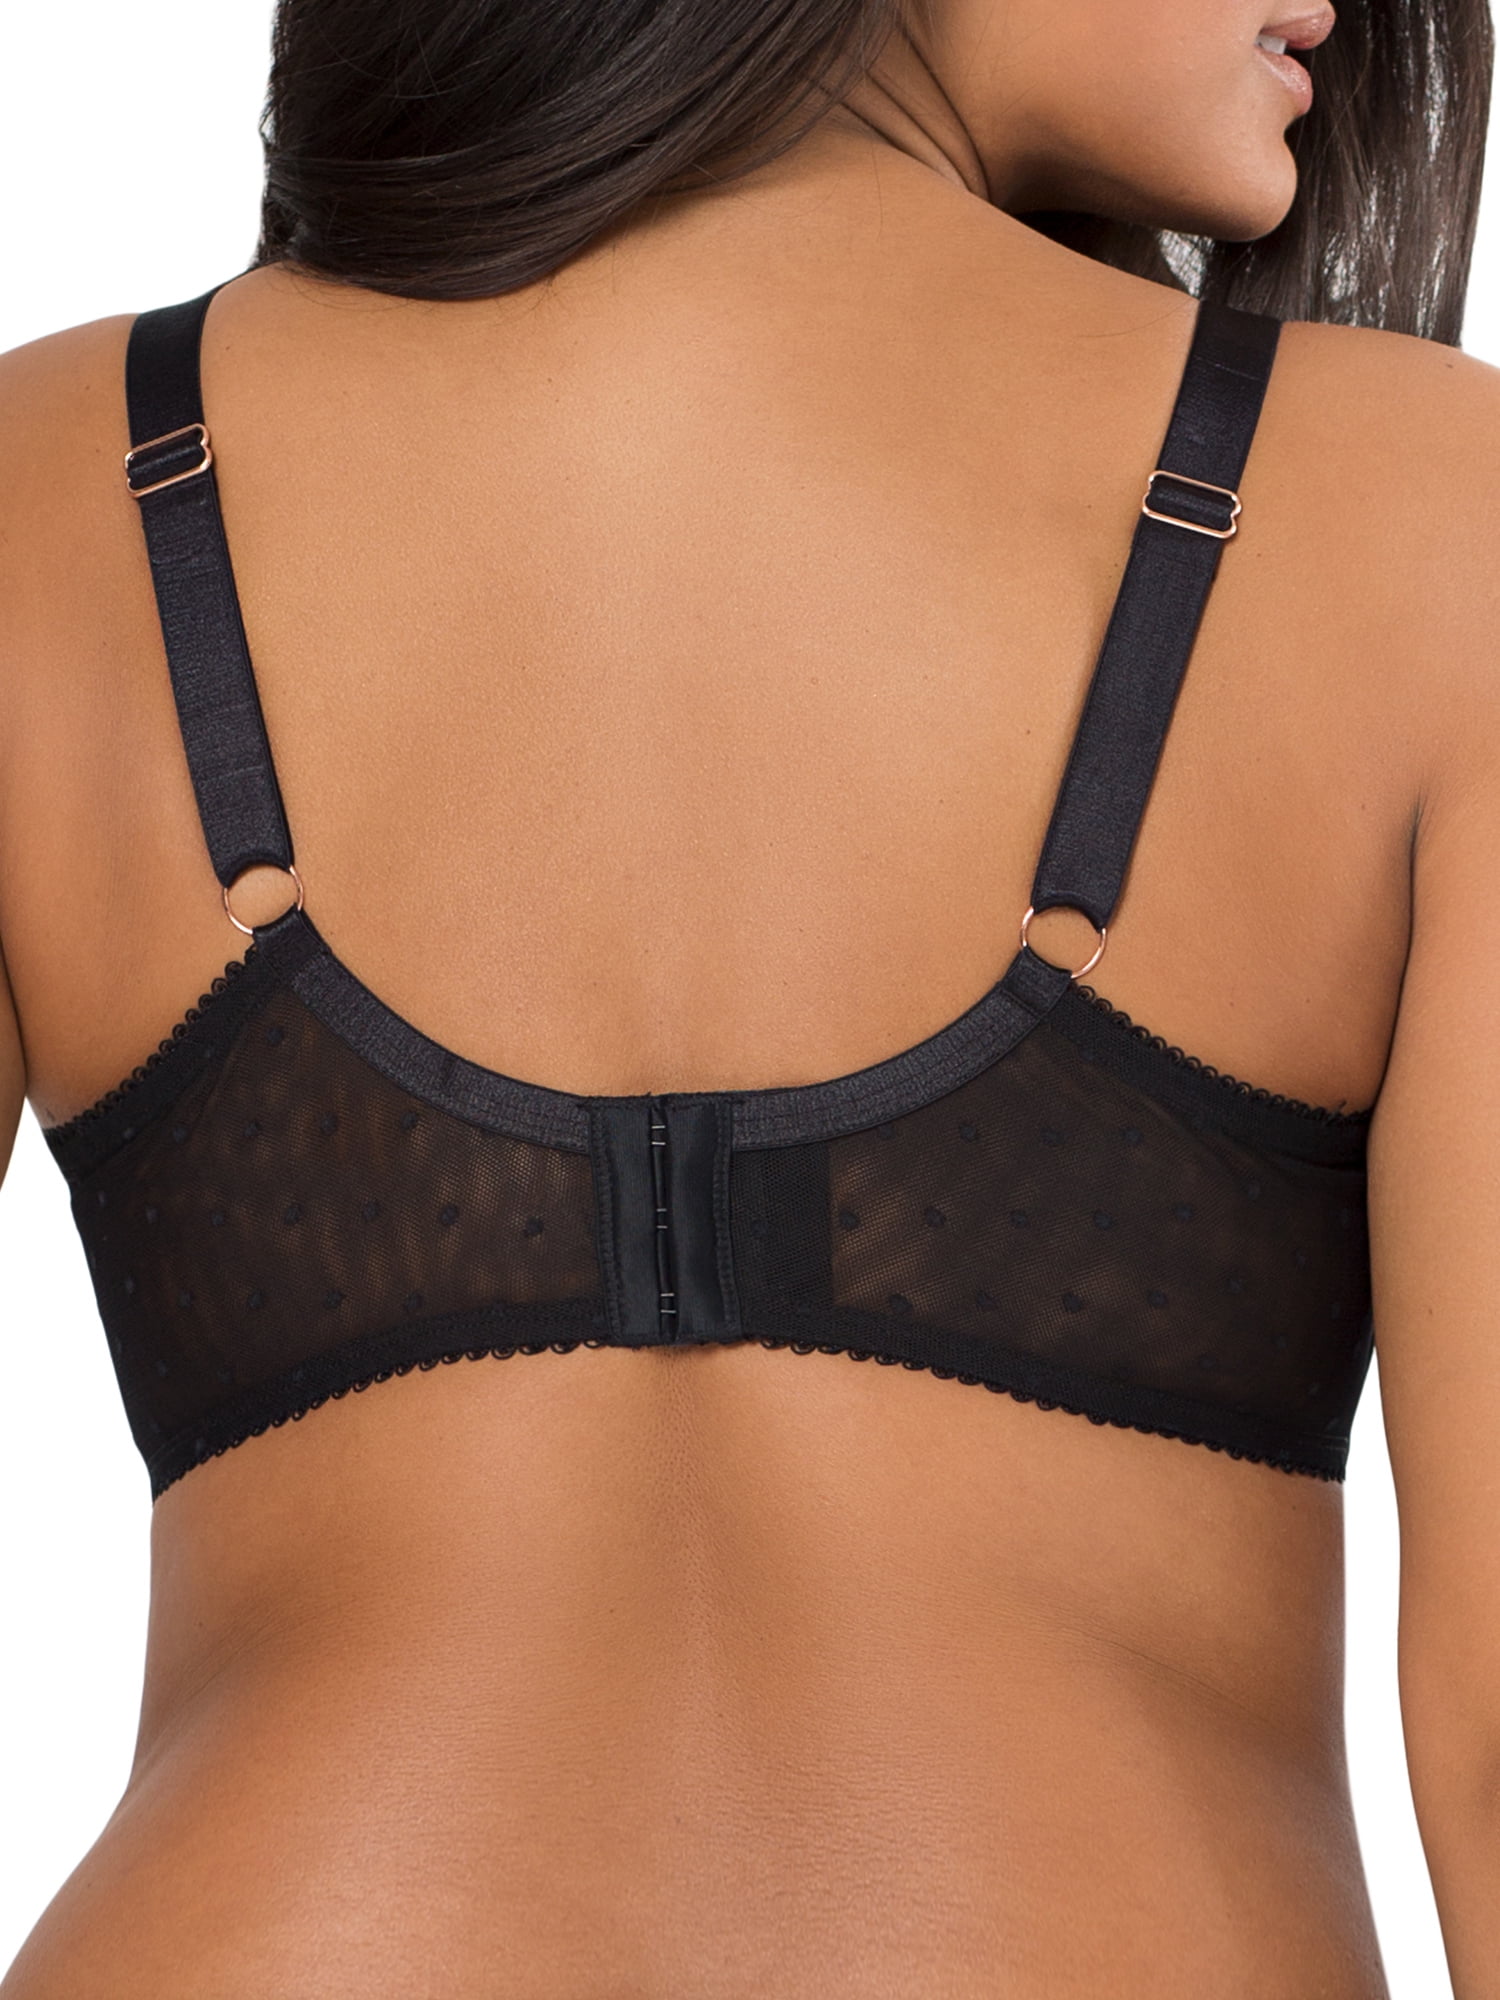 Smart & Sexy Women's Plus Size Retro Lace & Mesh Unlined Underwire Bra  Style-SA1017 